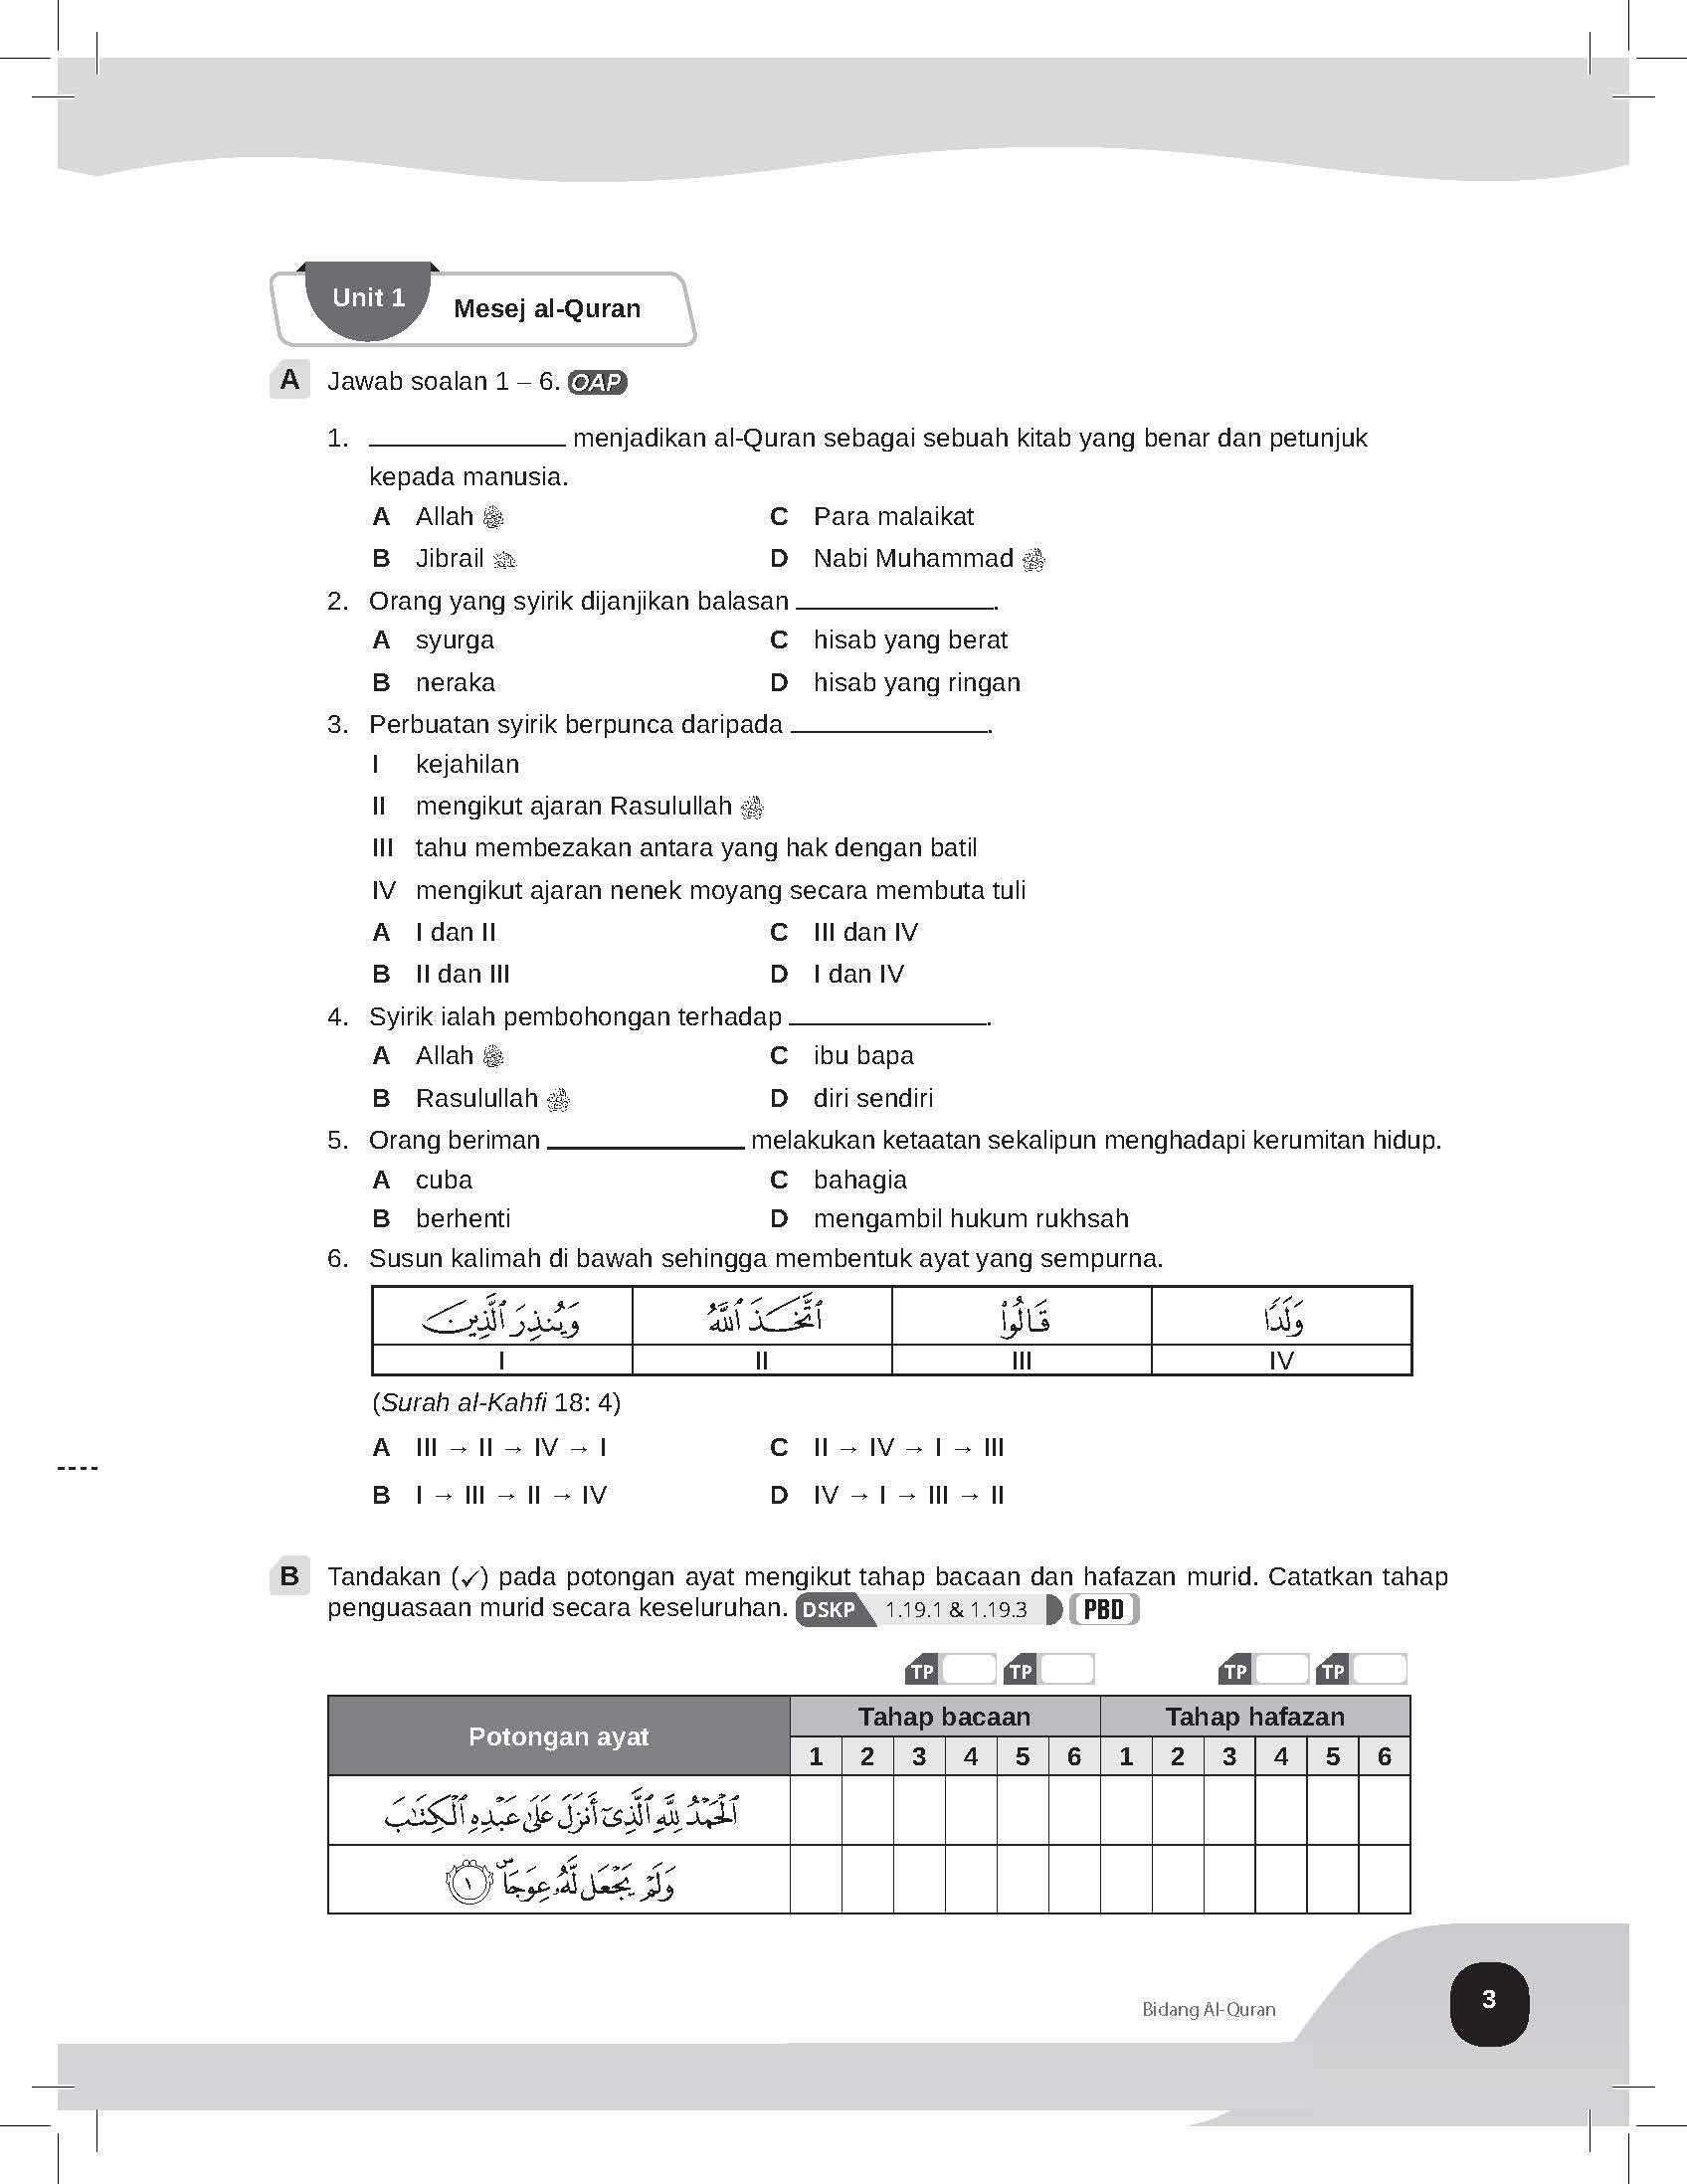 Speed Score A+ Latihan Topikal Pendidikan Islam Tingkatan 3 - (TBBS1333)